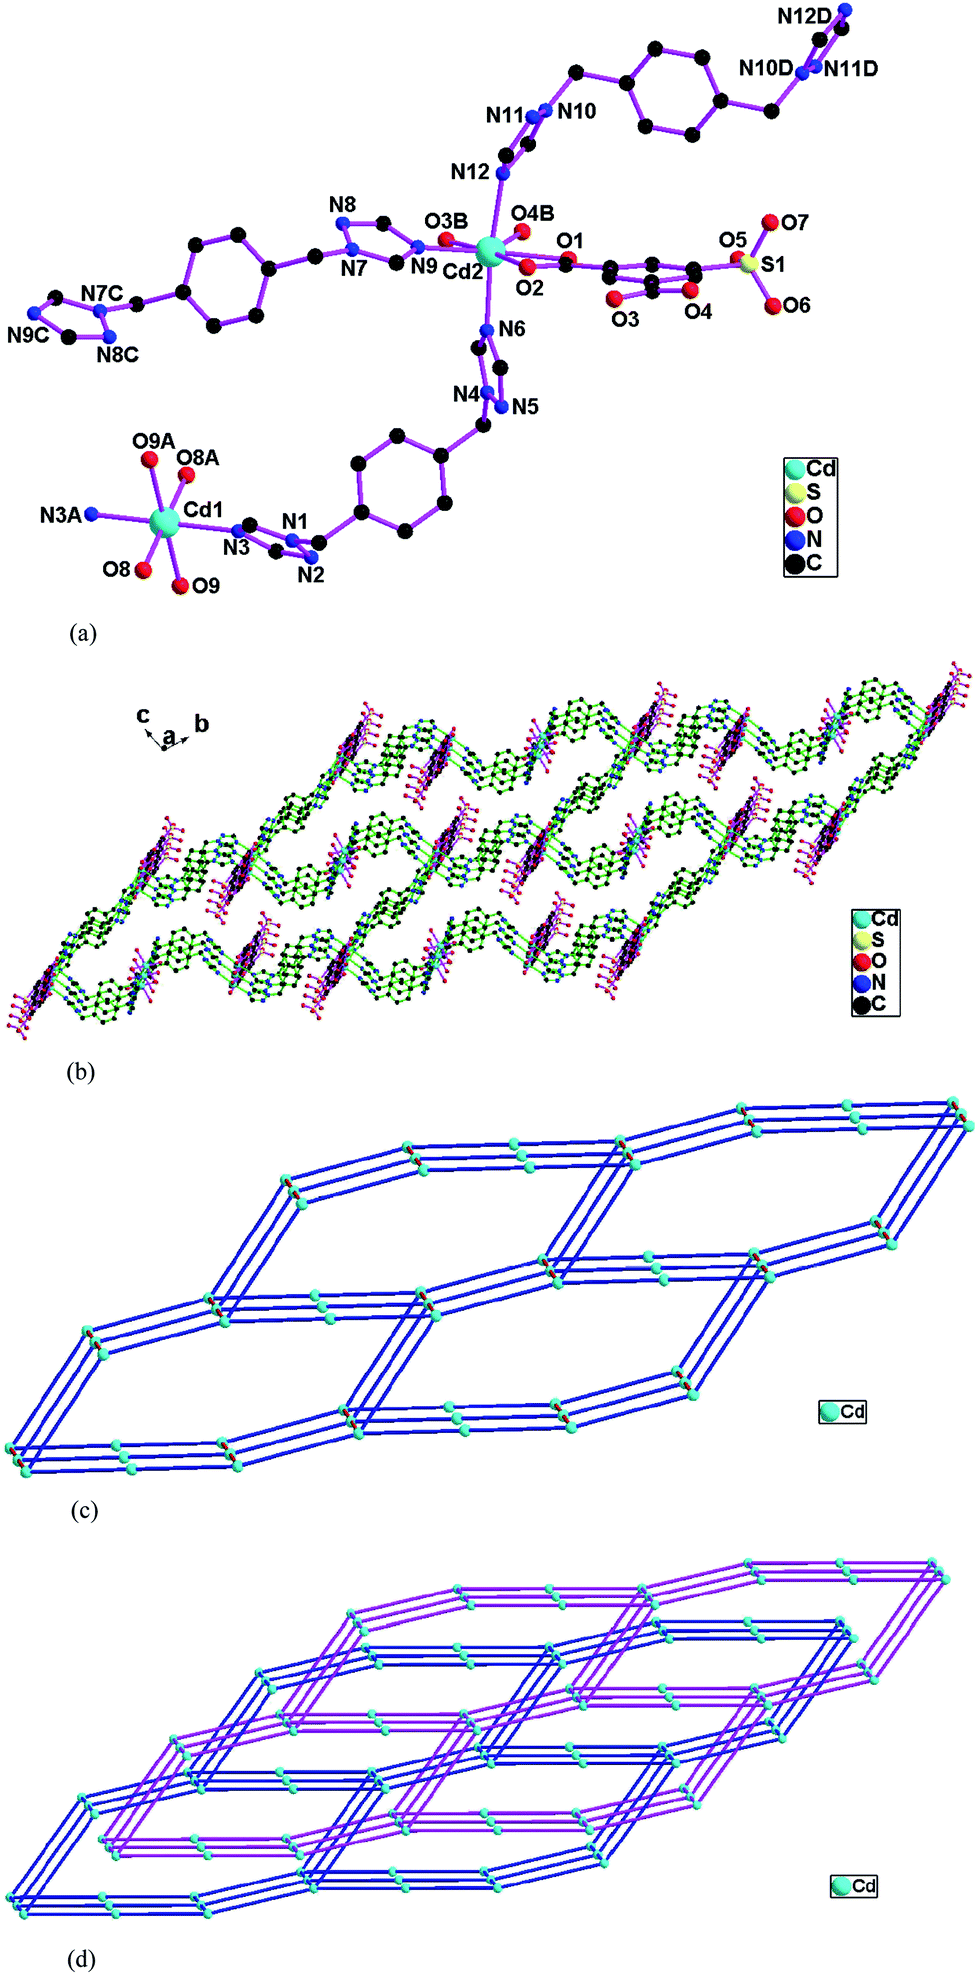 Tuning cadmium coordination architectures using 1,4-bis(1,2,4 